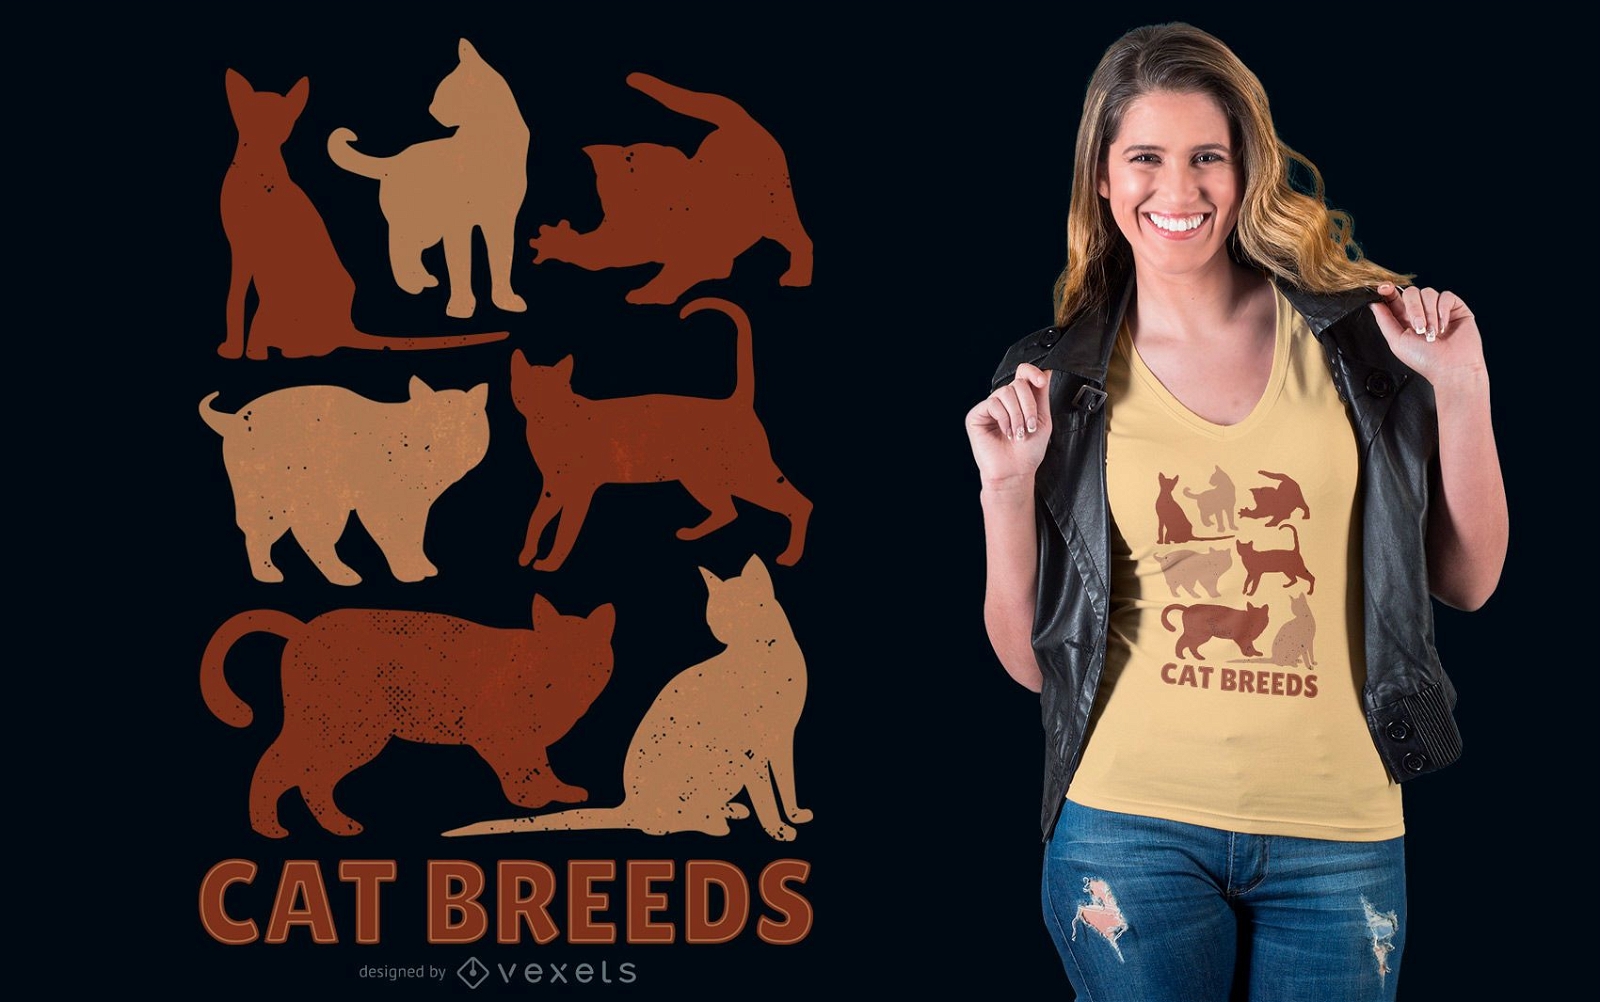 Cat breeds t-shirt design